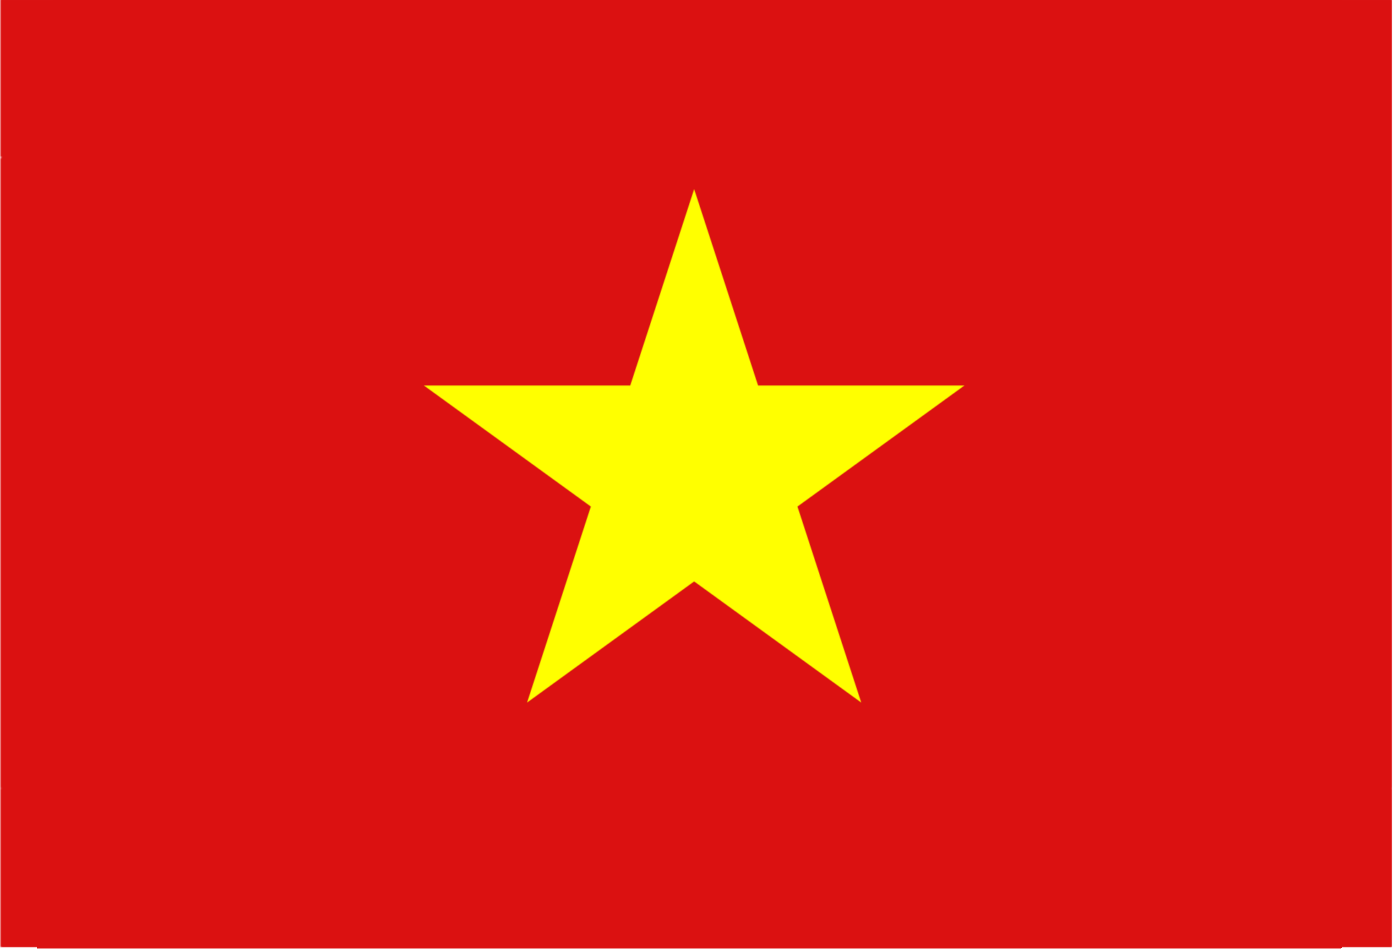 ベトナム向け文書の領事認証取得について【アポスティーユ、翻訳】